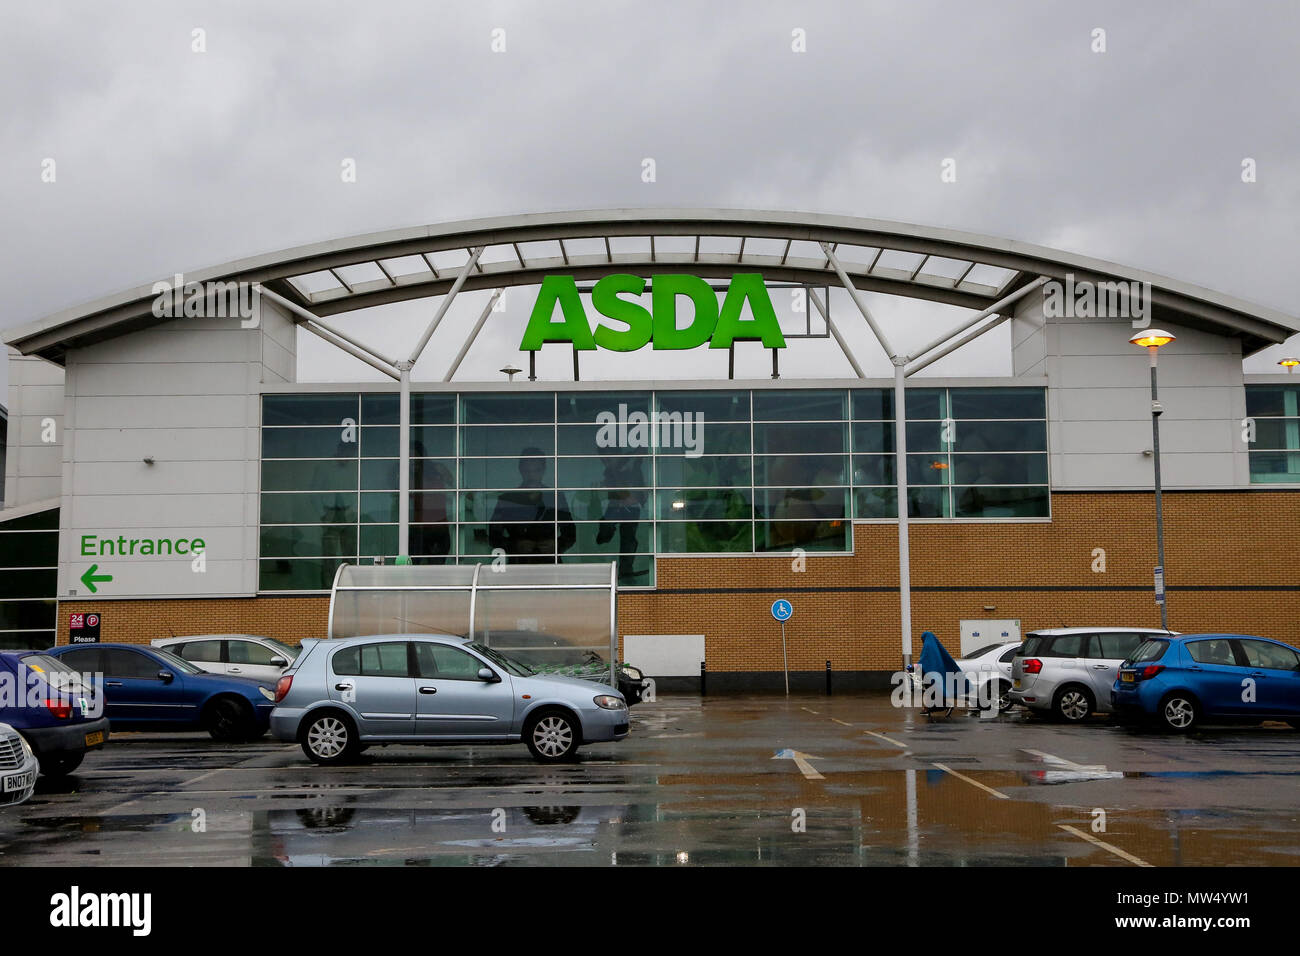 Allgemeine Ansicht von Asda und Sainsbury's Stores im Norden von London. Supermarkt Sainsbury's hat Pläne mit Asda, die derzeit von uns Supermarkt riesen Walmart gehört zu verschmelzen bestätigt. Mit: Atmosphäre, Wo: London, Vereinigtes Königreich, wenn: 30 Apr 2018 Credit: Dinendra Haria/WANN Stockfoto